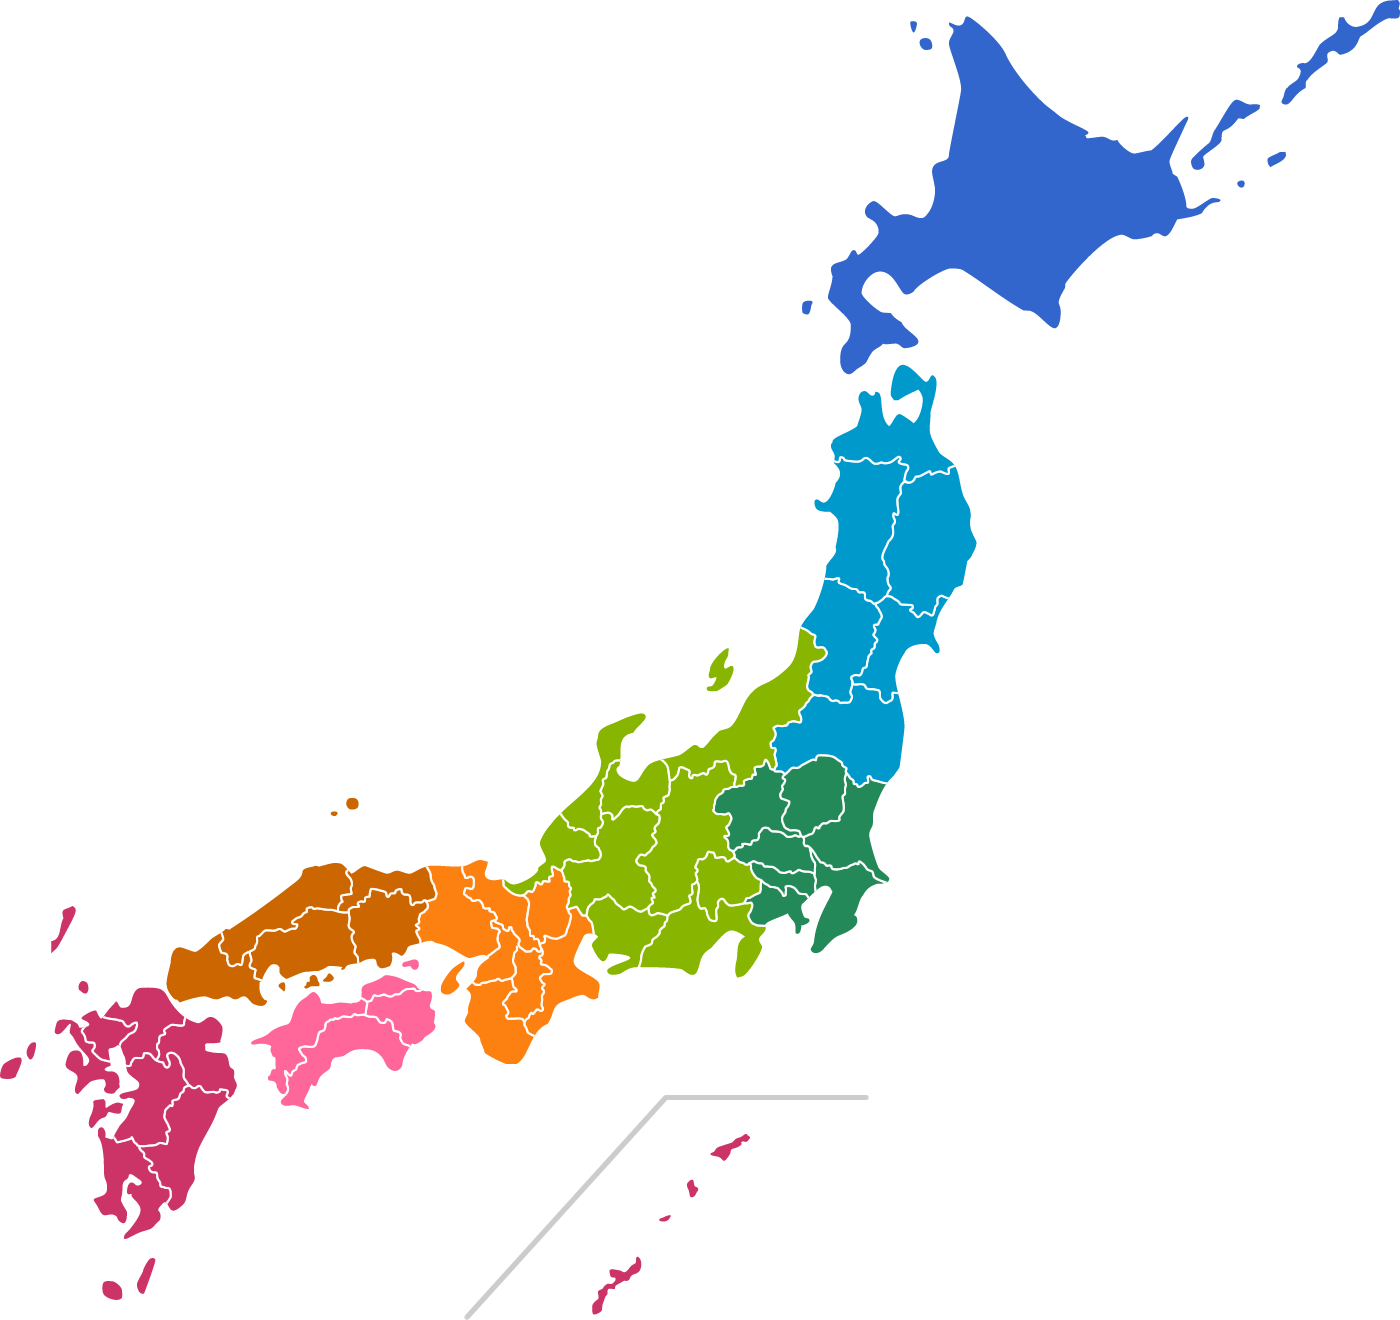 日本地図のイラスト 地域色分け 都道府県境界線入り イラストストック